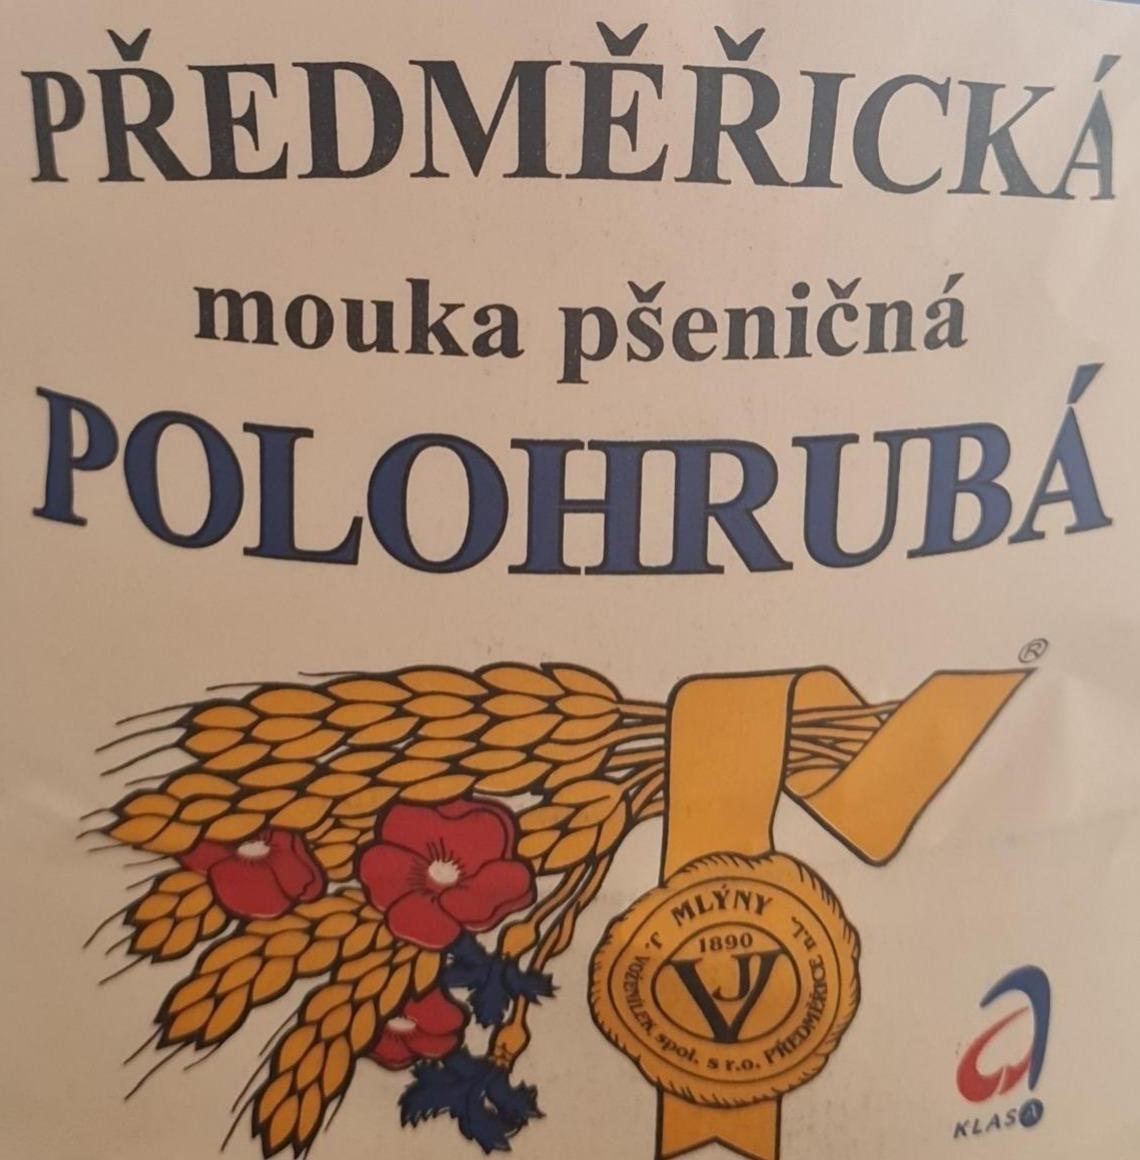 Фото - Předměřická polohrubá mouka pšeničná Mlýny J. Voženílek, spol. s r.o.